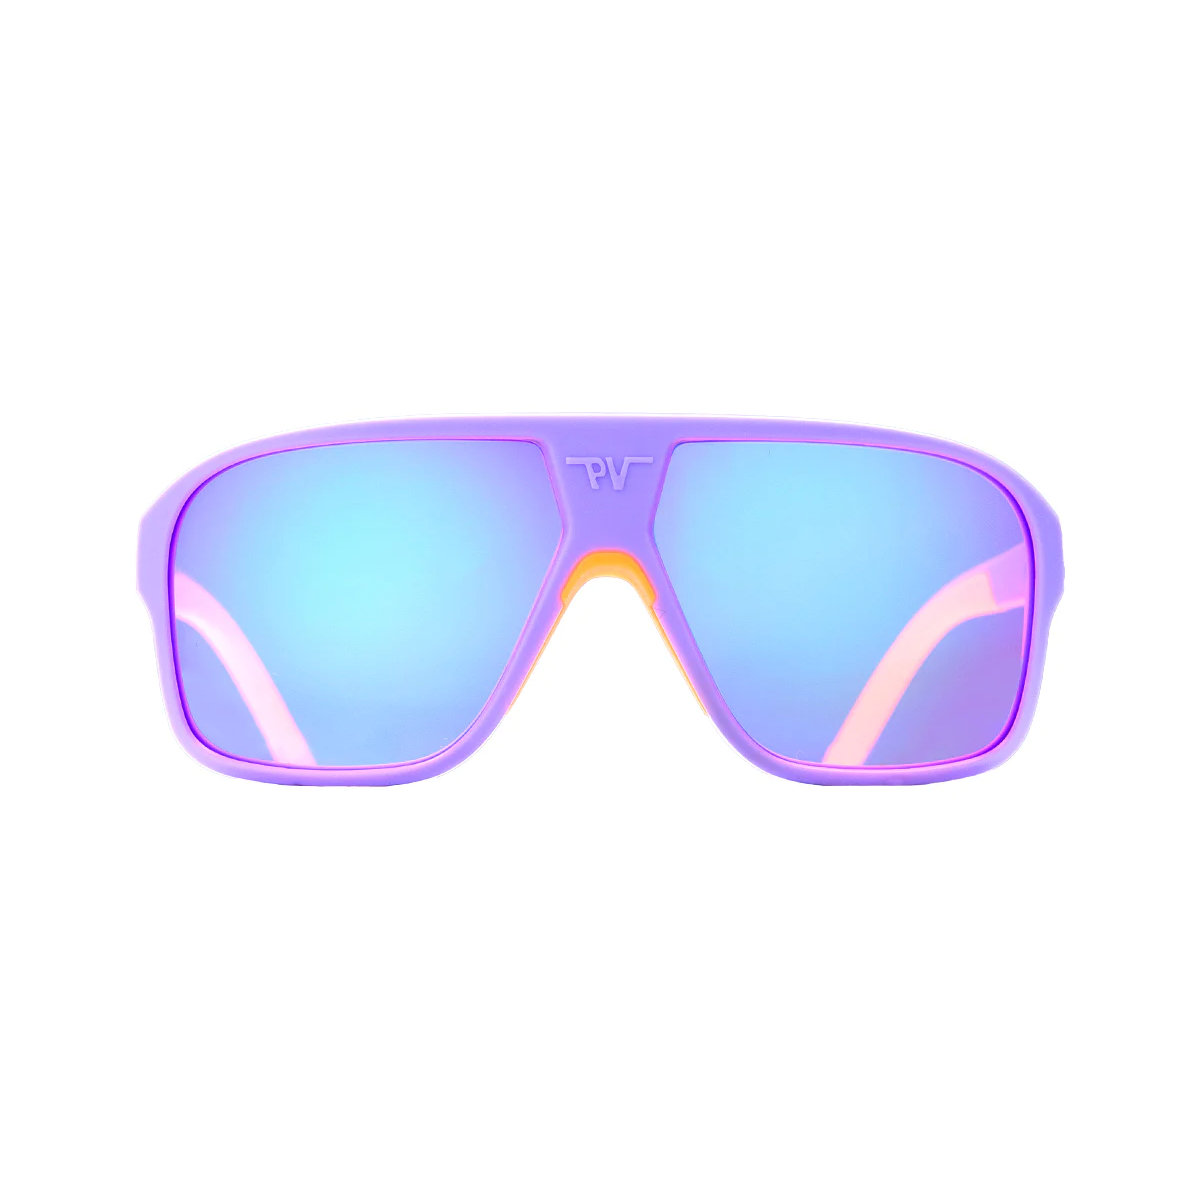 Gafas de sol en color lila y naranja Pit Viper The High Speed Off Road II Flight Optics